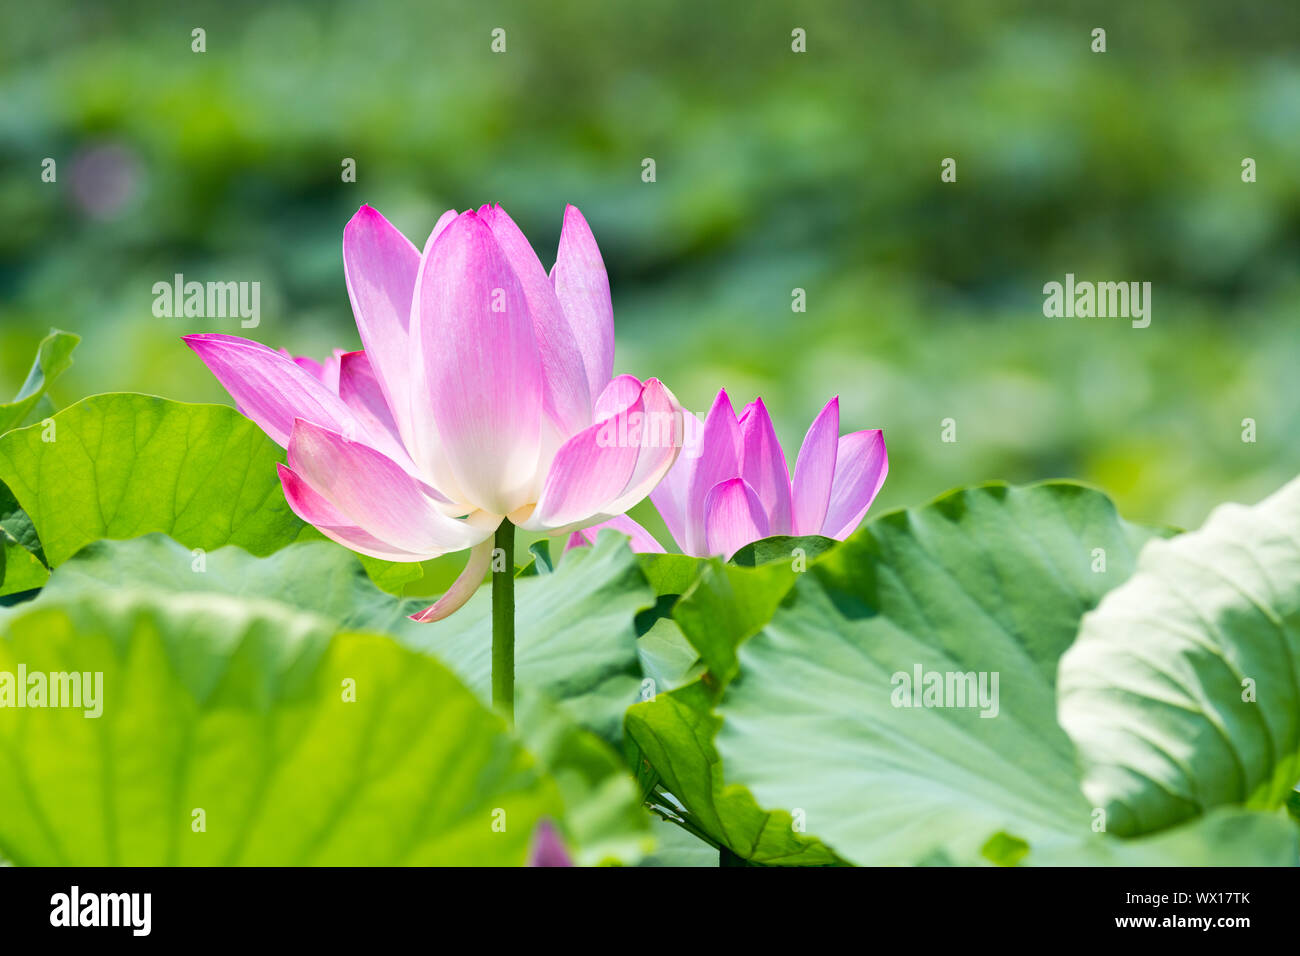 lotus flower bloom in summer Stock Photo